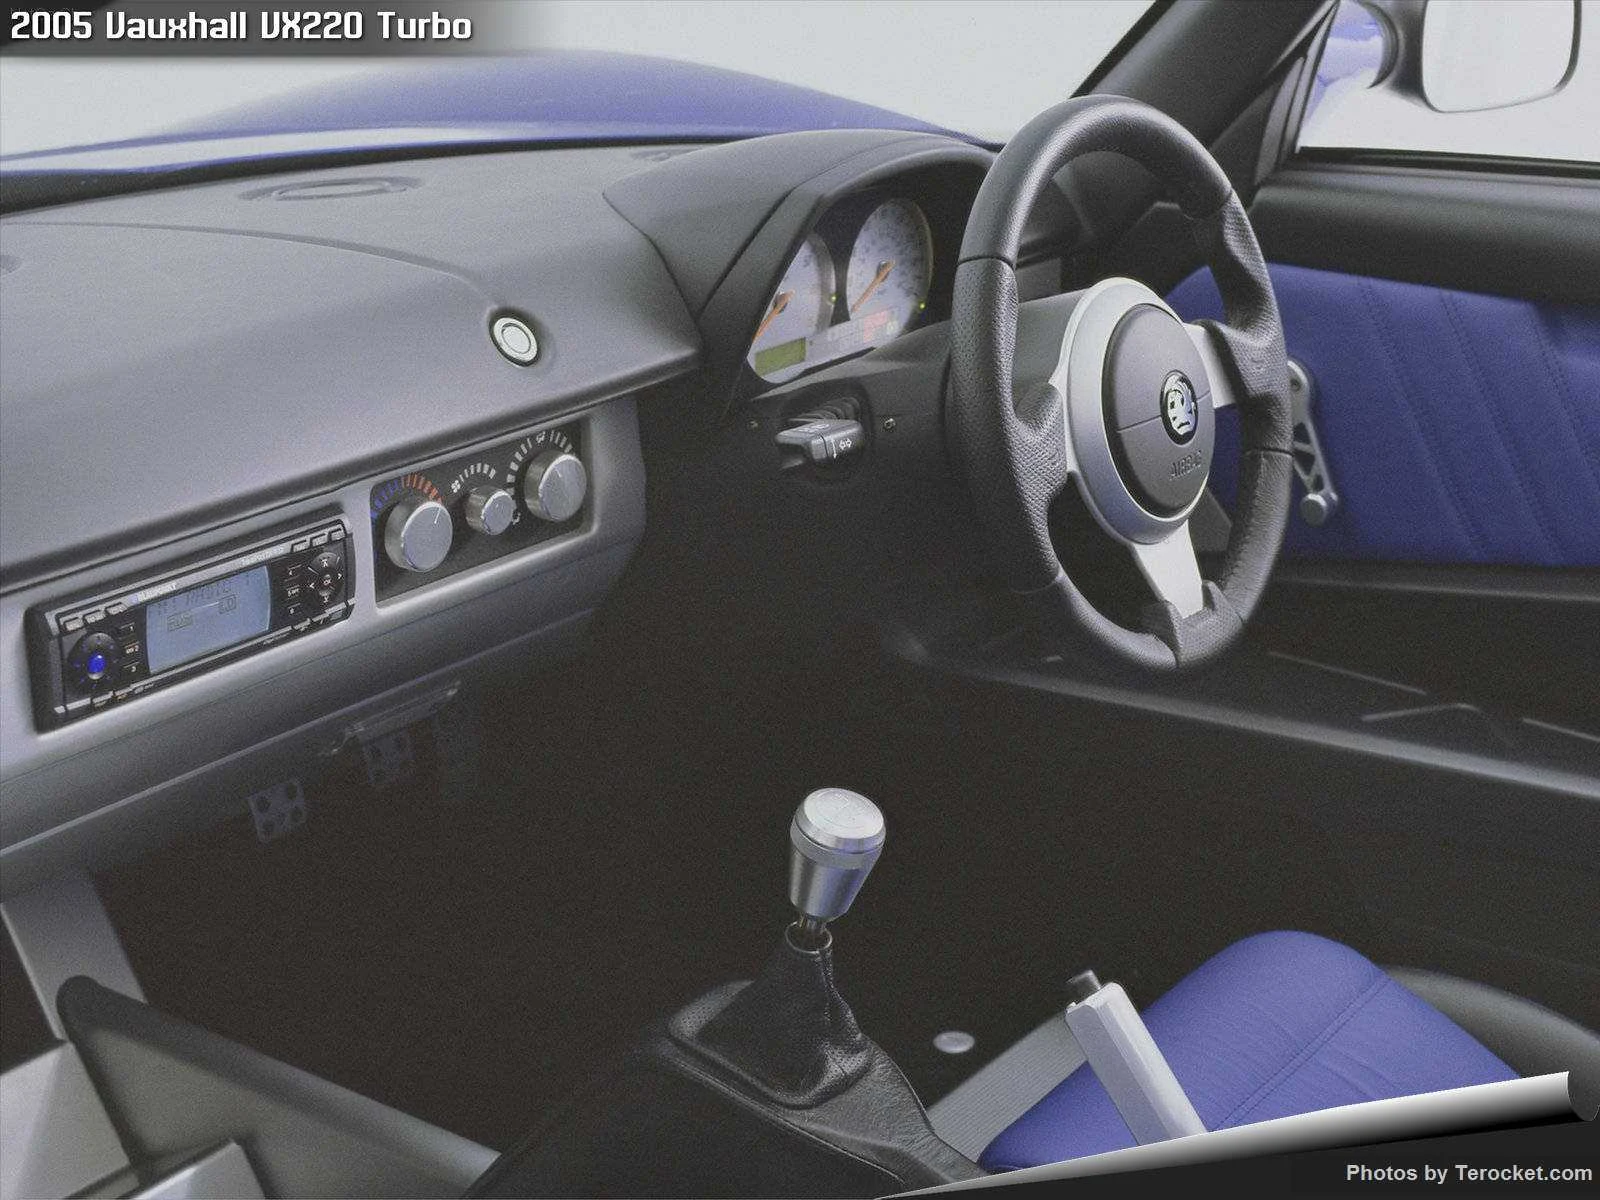 Hình ảnh xe ô tô Vauxhall VX220 Turbo 2005 & nội ngoại thất